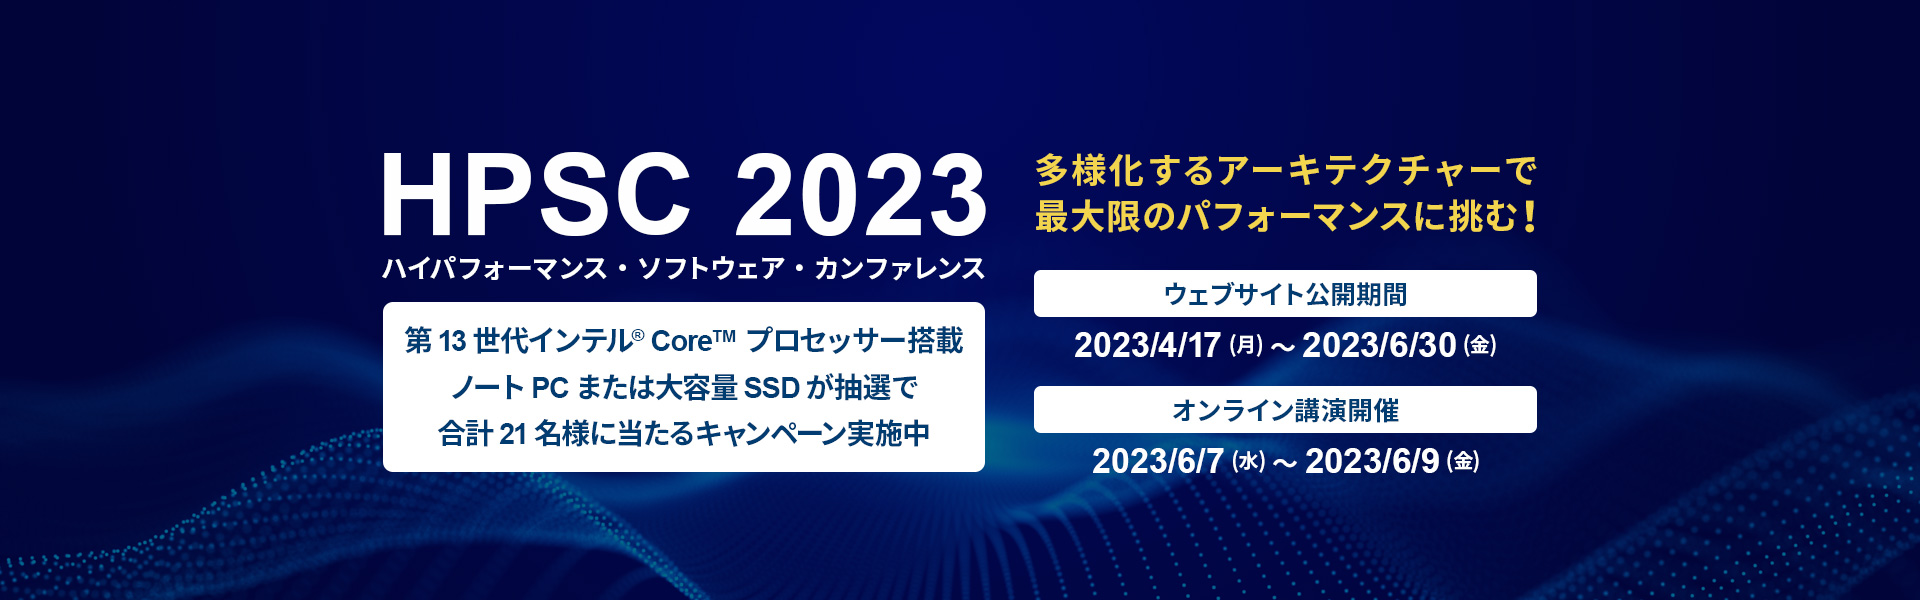 HPSC 2023